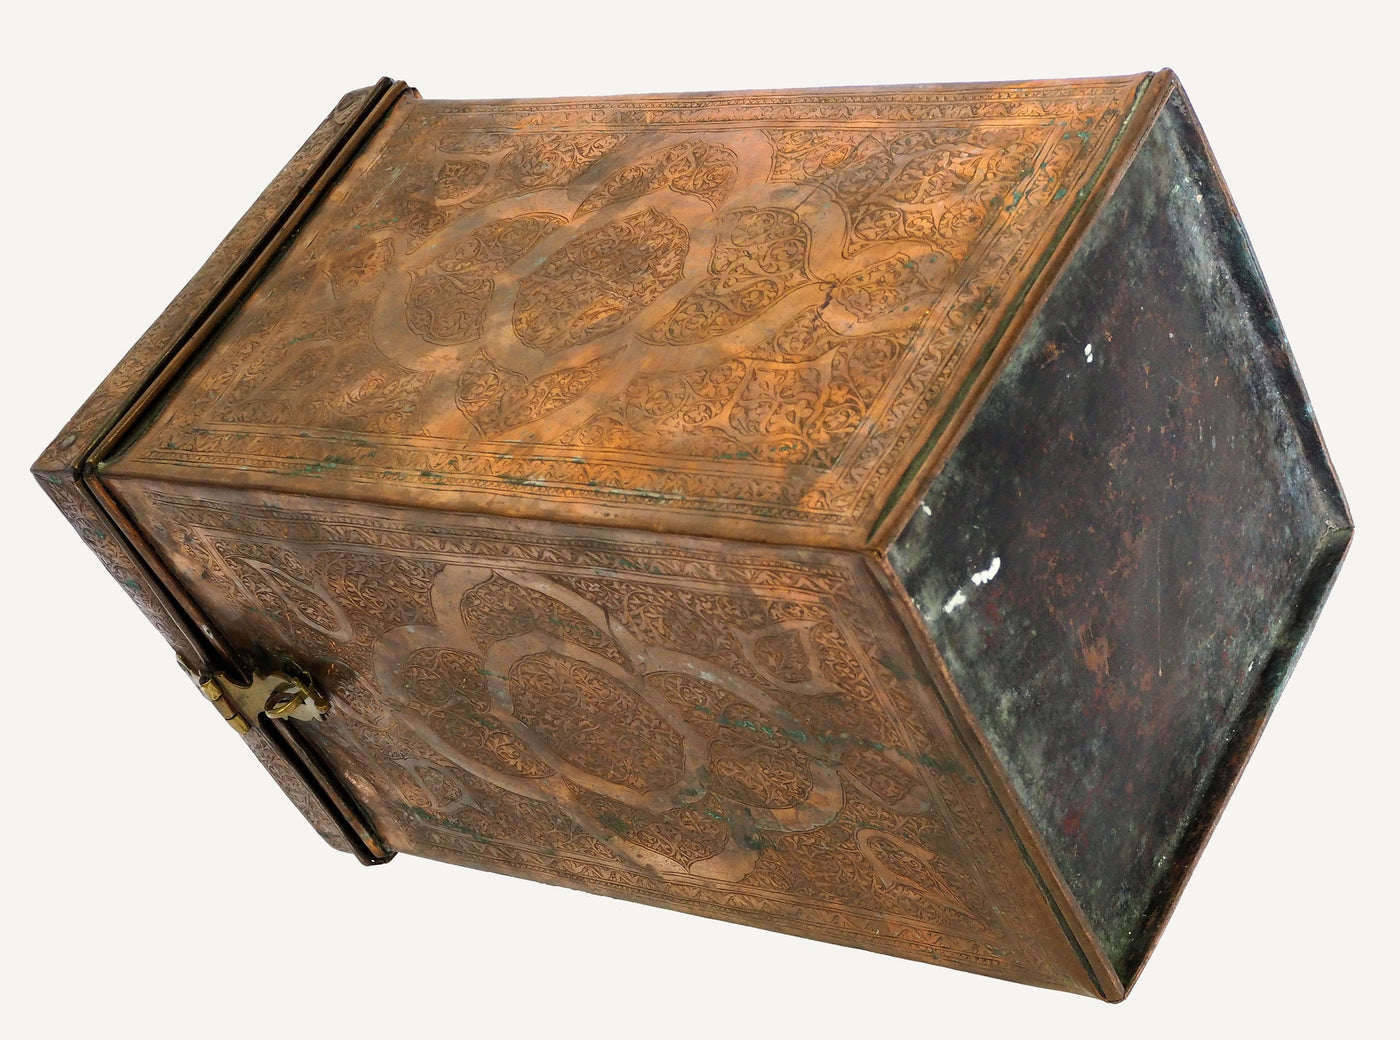 antik Massiv islamische Kupfer verzinnte Kiste Truhe gefäß büchse Schmuck Dose schatulle aus Afghanistan   19. Jh. Nr:IT  Orientsbazar   